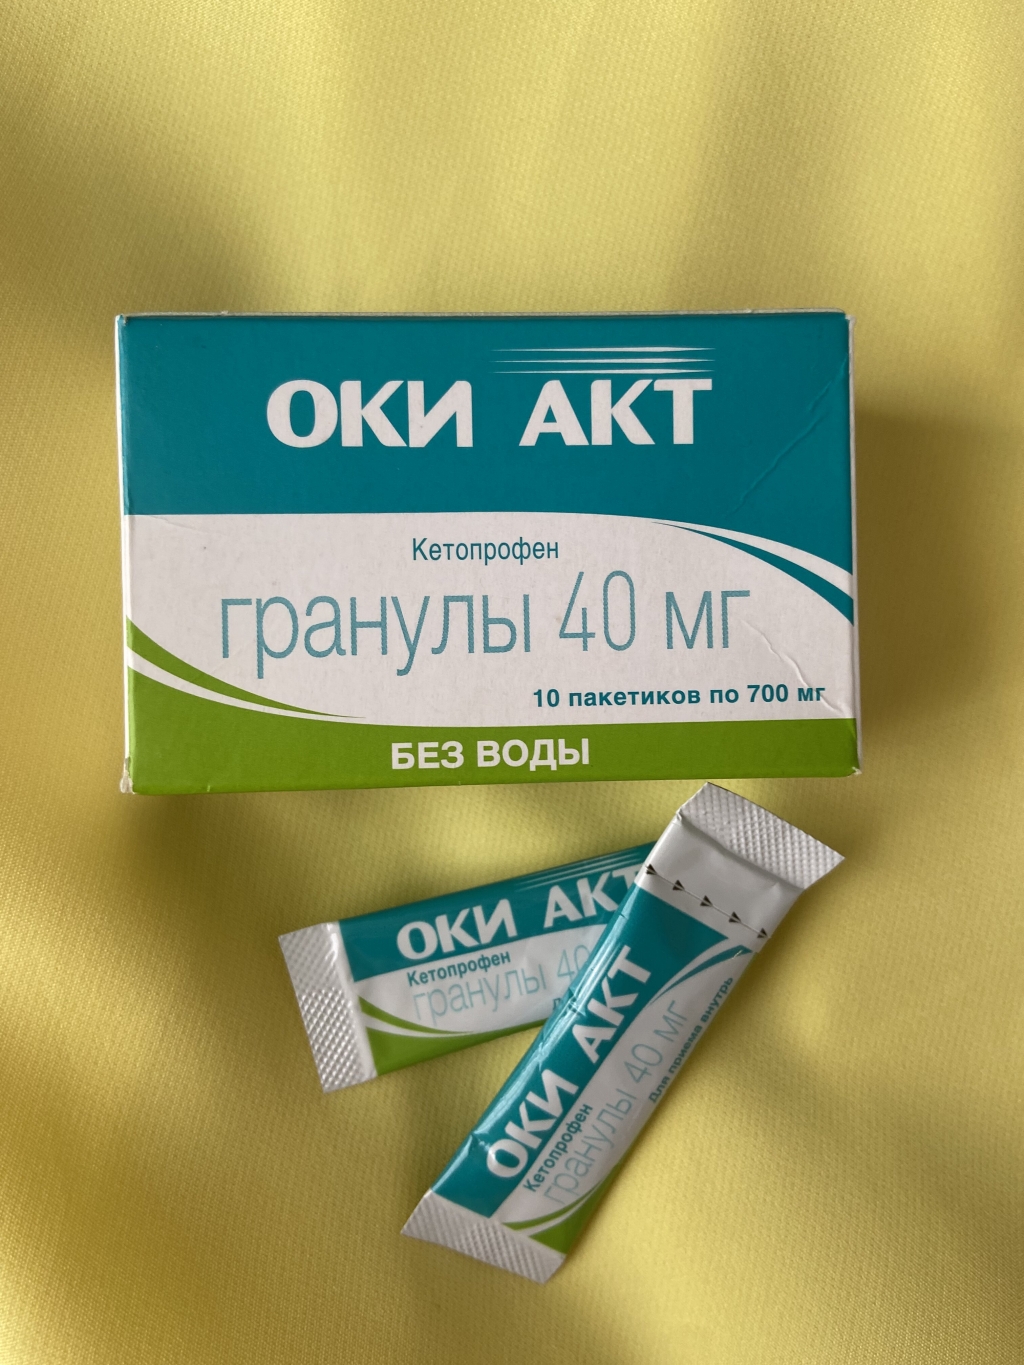 ОКИ АКТ - Оки Акт, гранулы которые помогли мне справиться с зубной болью.